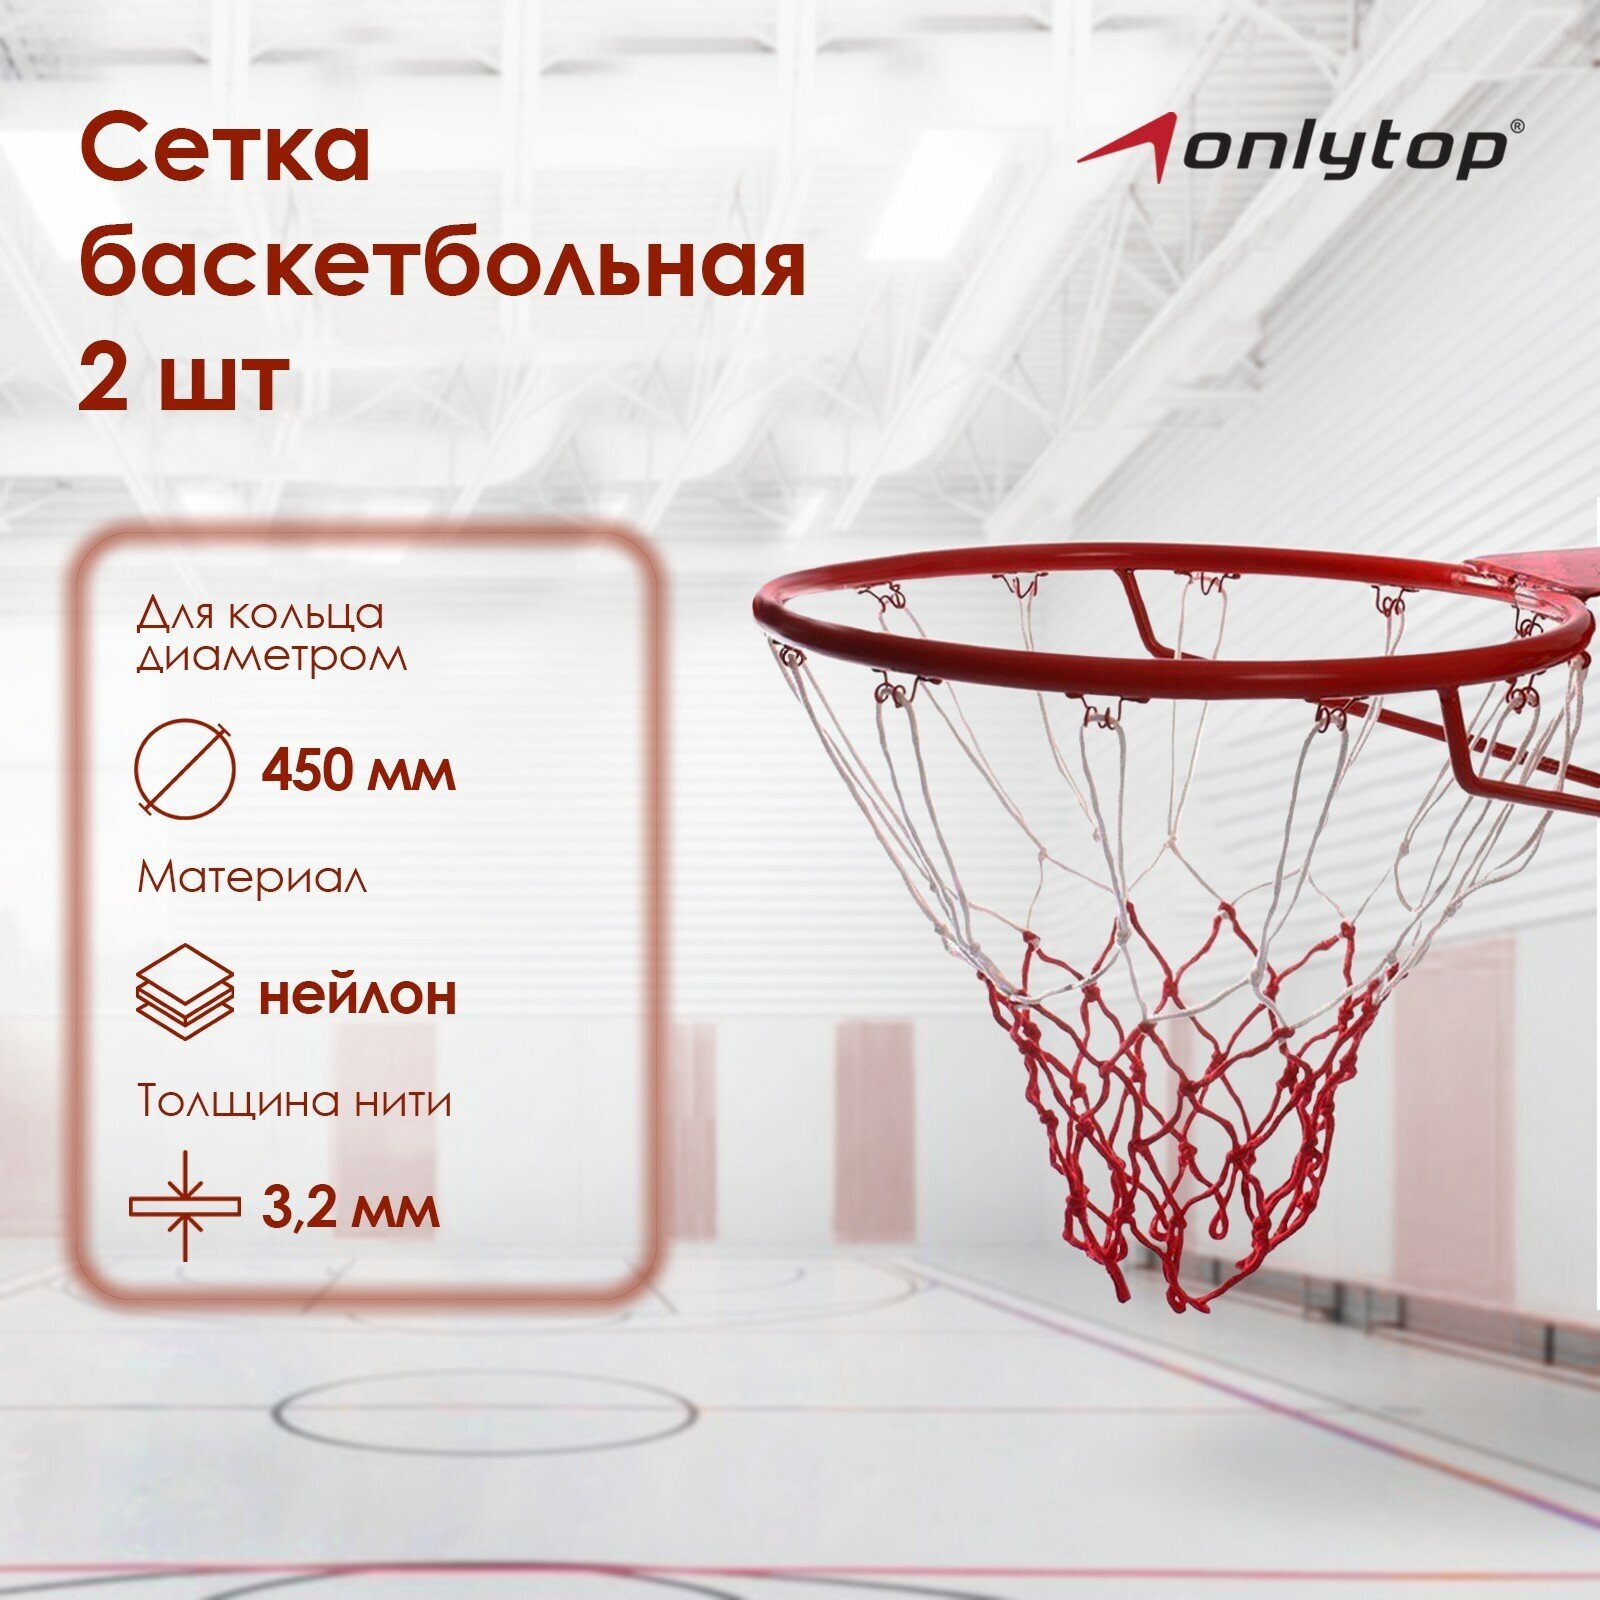 Сетка ONLITOP, баскетбольная, двухцветная, нить 3,2 мм, (2 шт)